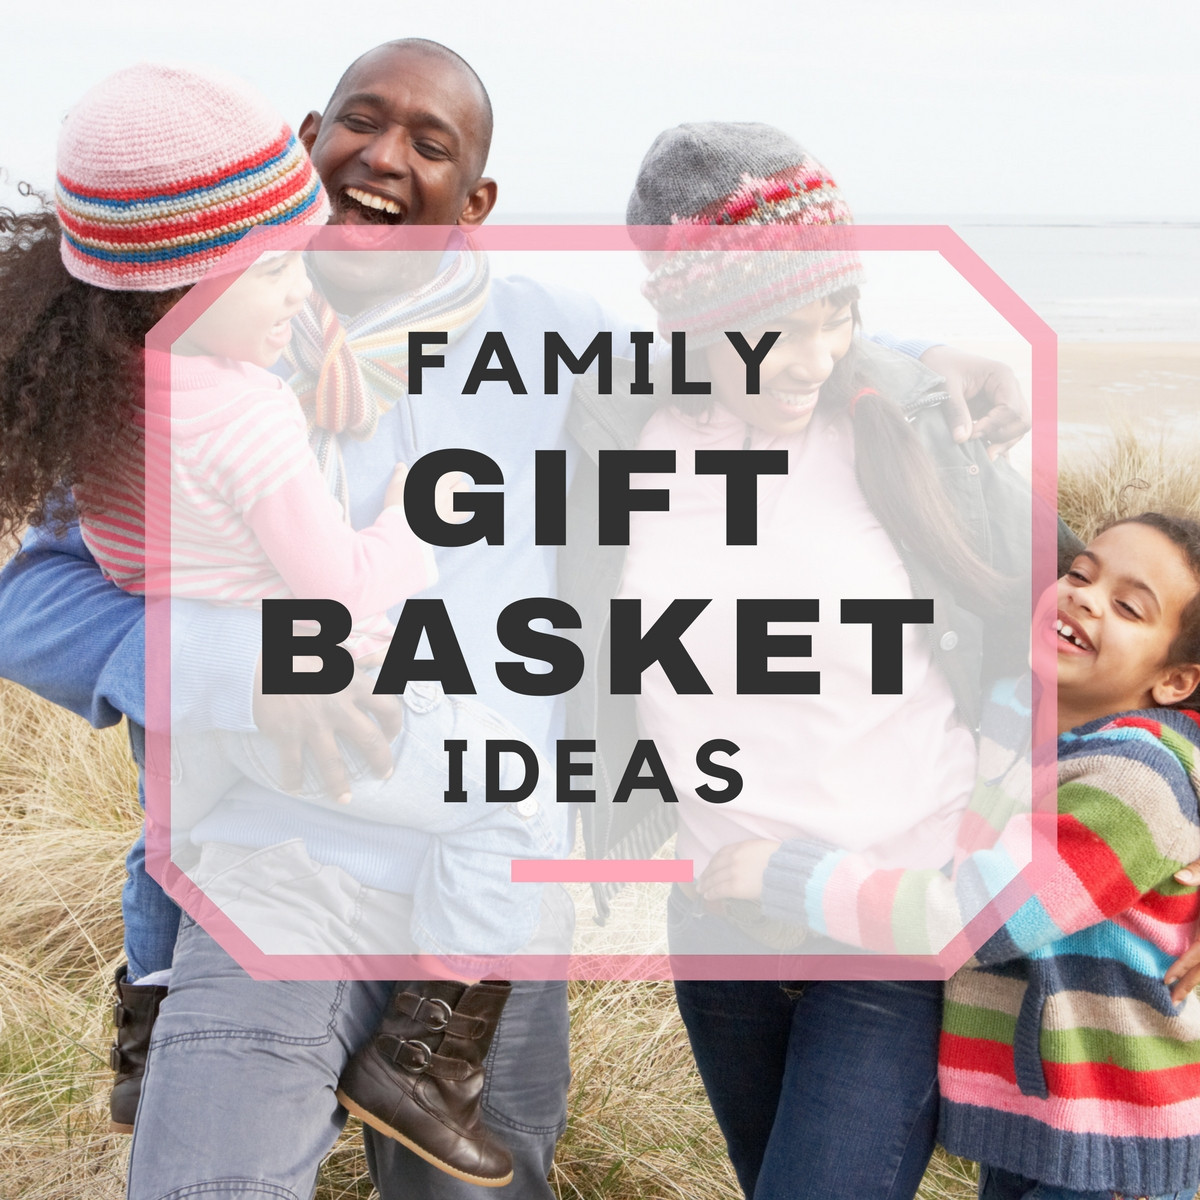 Family Gift Basket Ideas
 10 Best Family Gift Basket Ideas